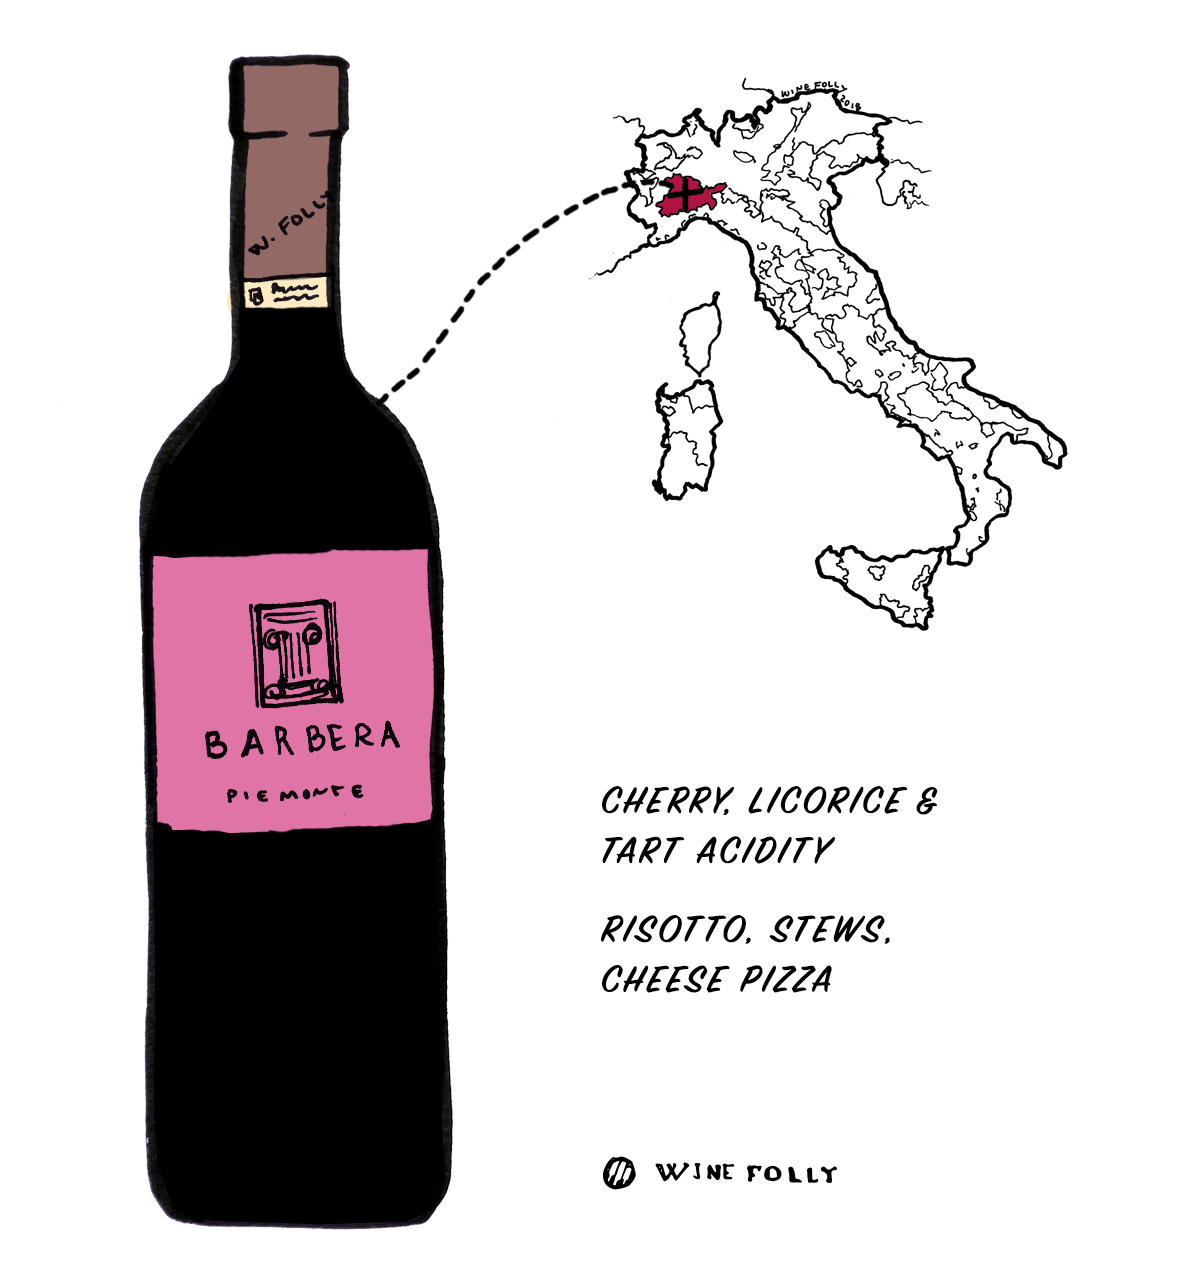 Червено вино от Барбера от Италия - Чудесен избор за начинаещи в италианското вино - Илюстрация от Wine Folly